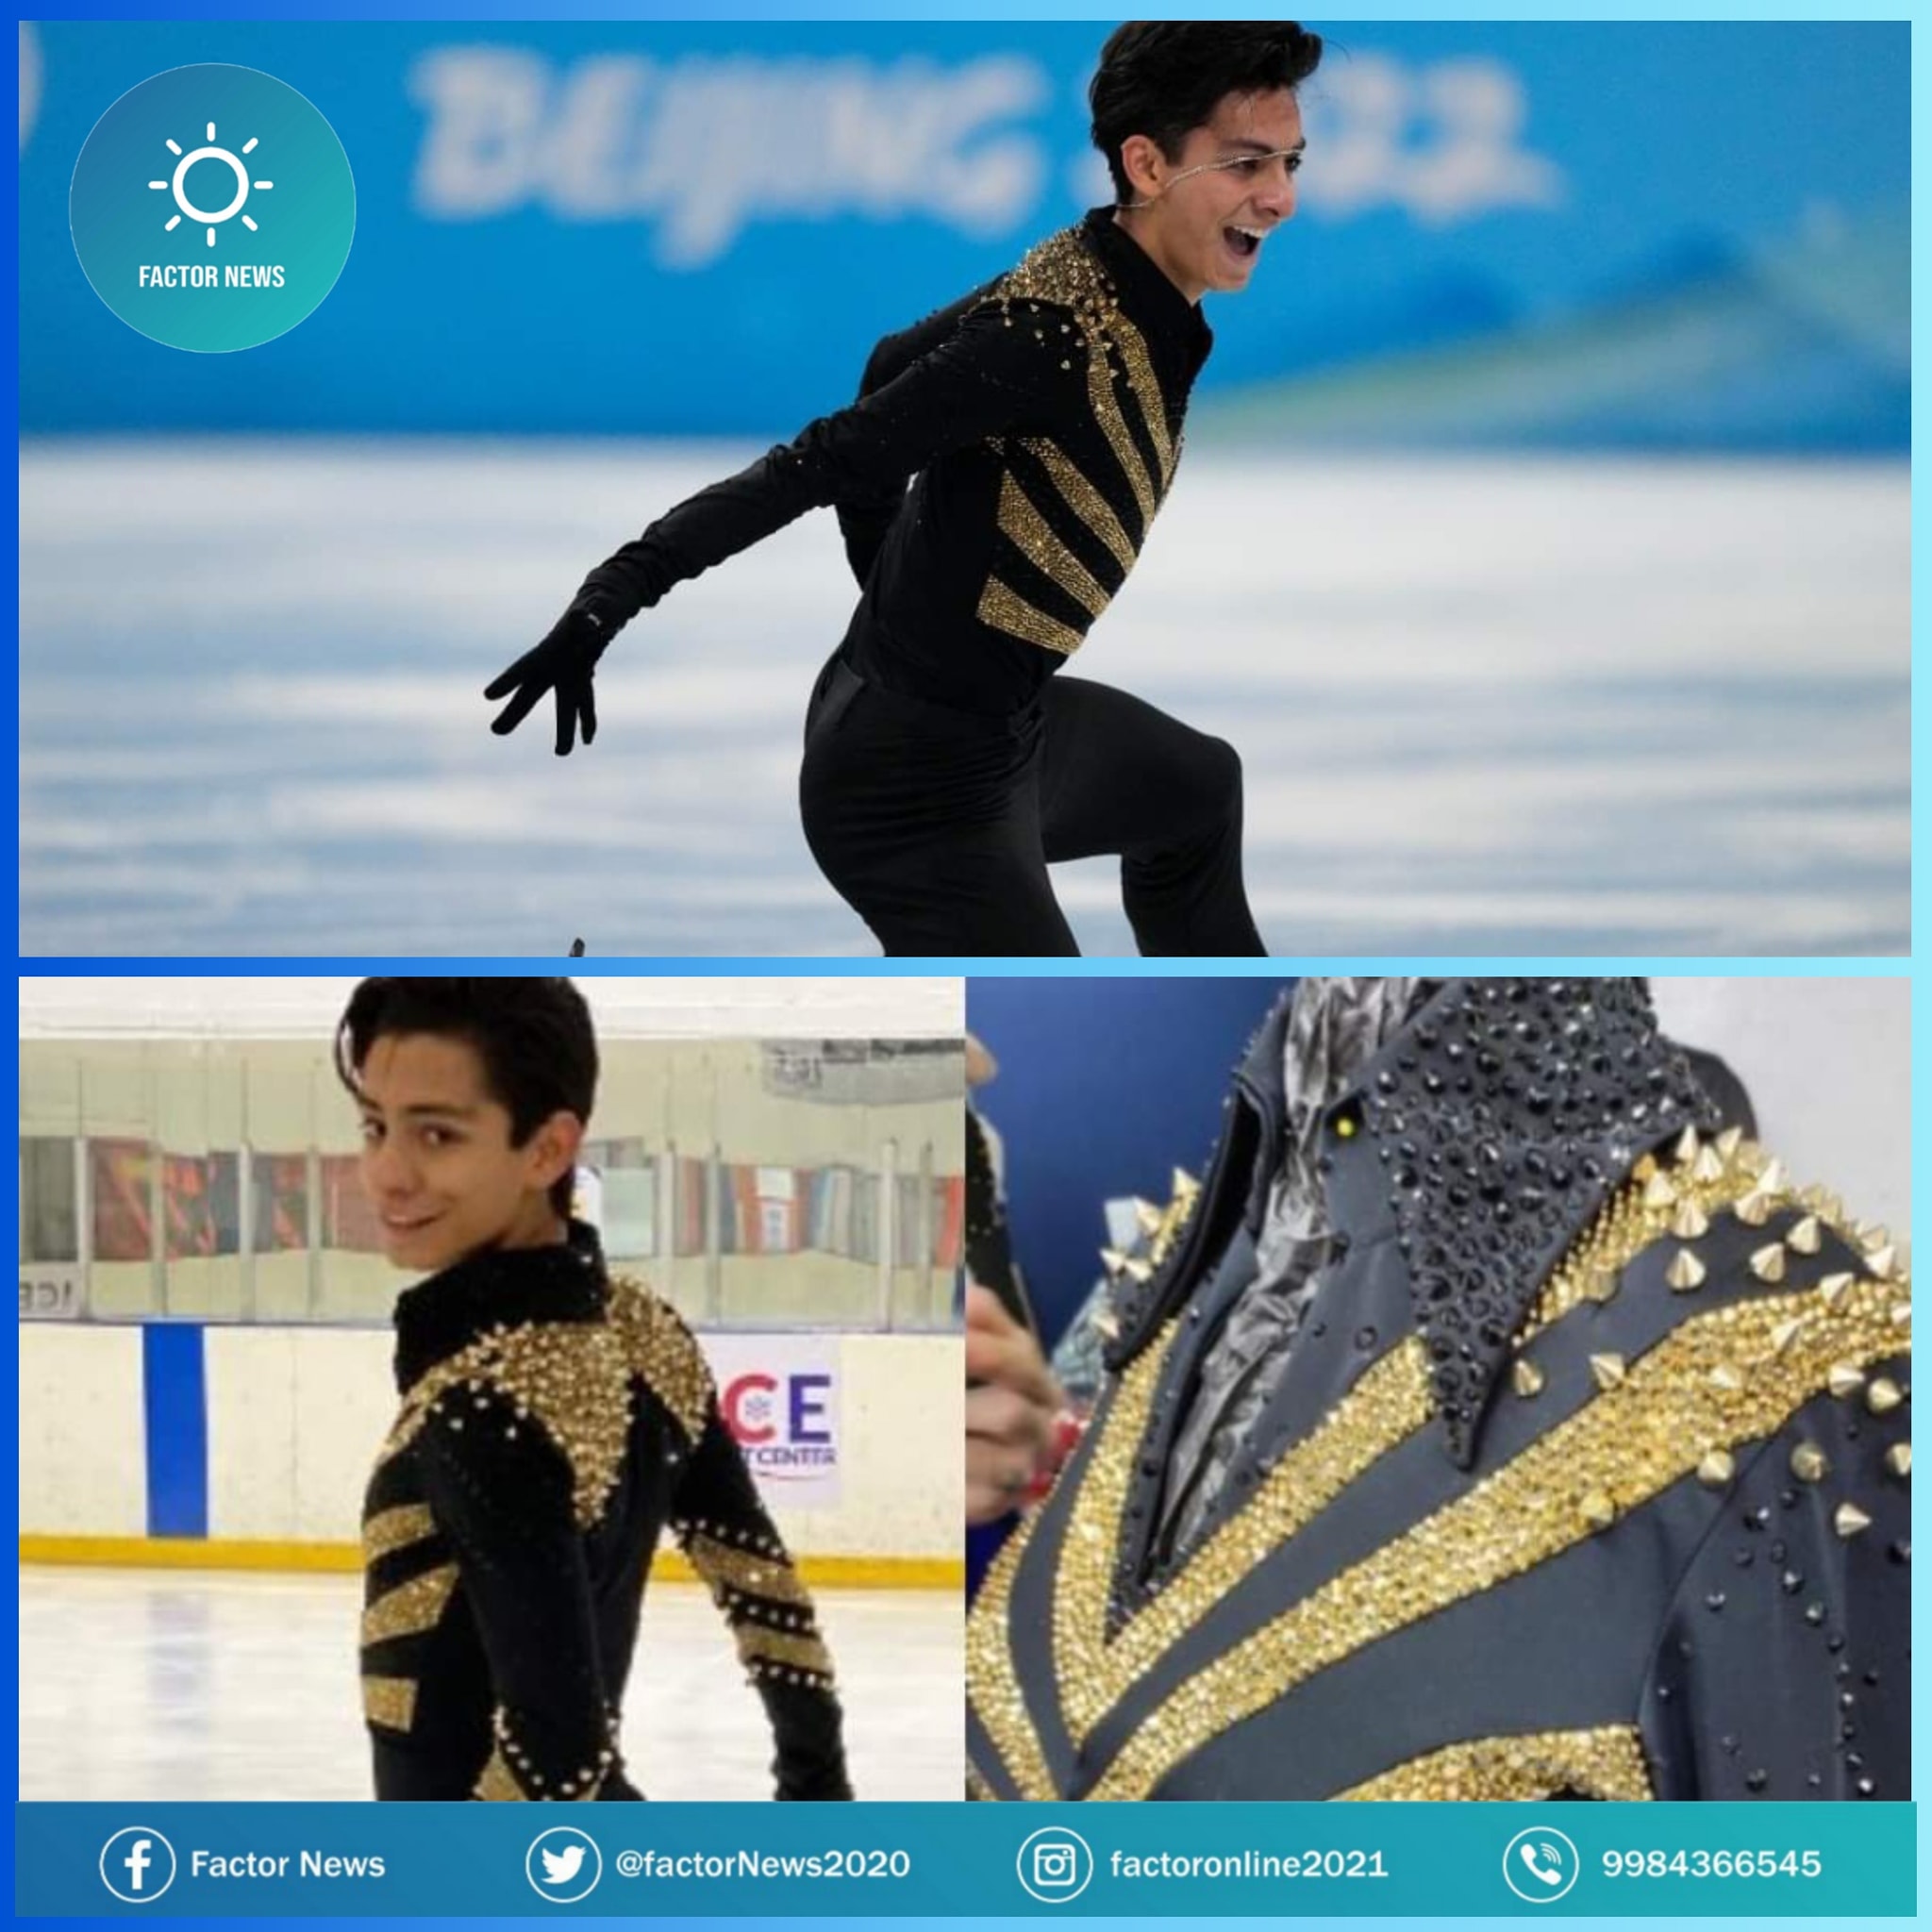 Donovan Carrillo avanza a final de patinaje artístico en Beijing 2022.